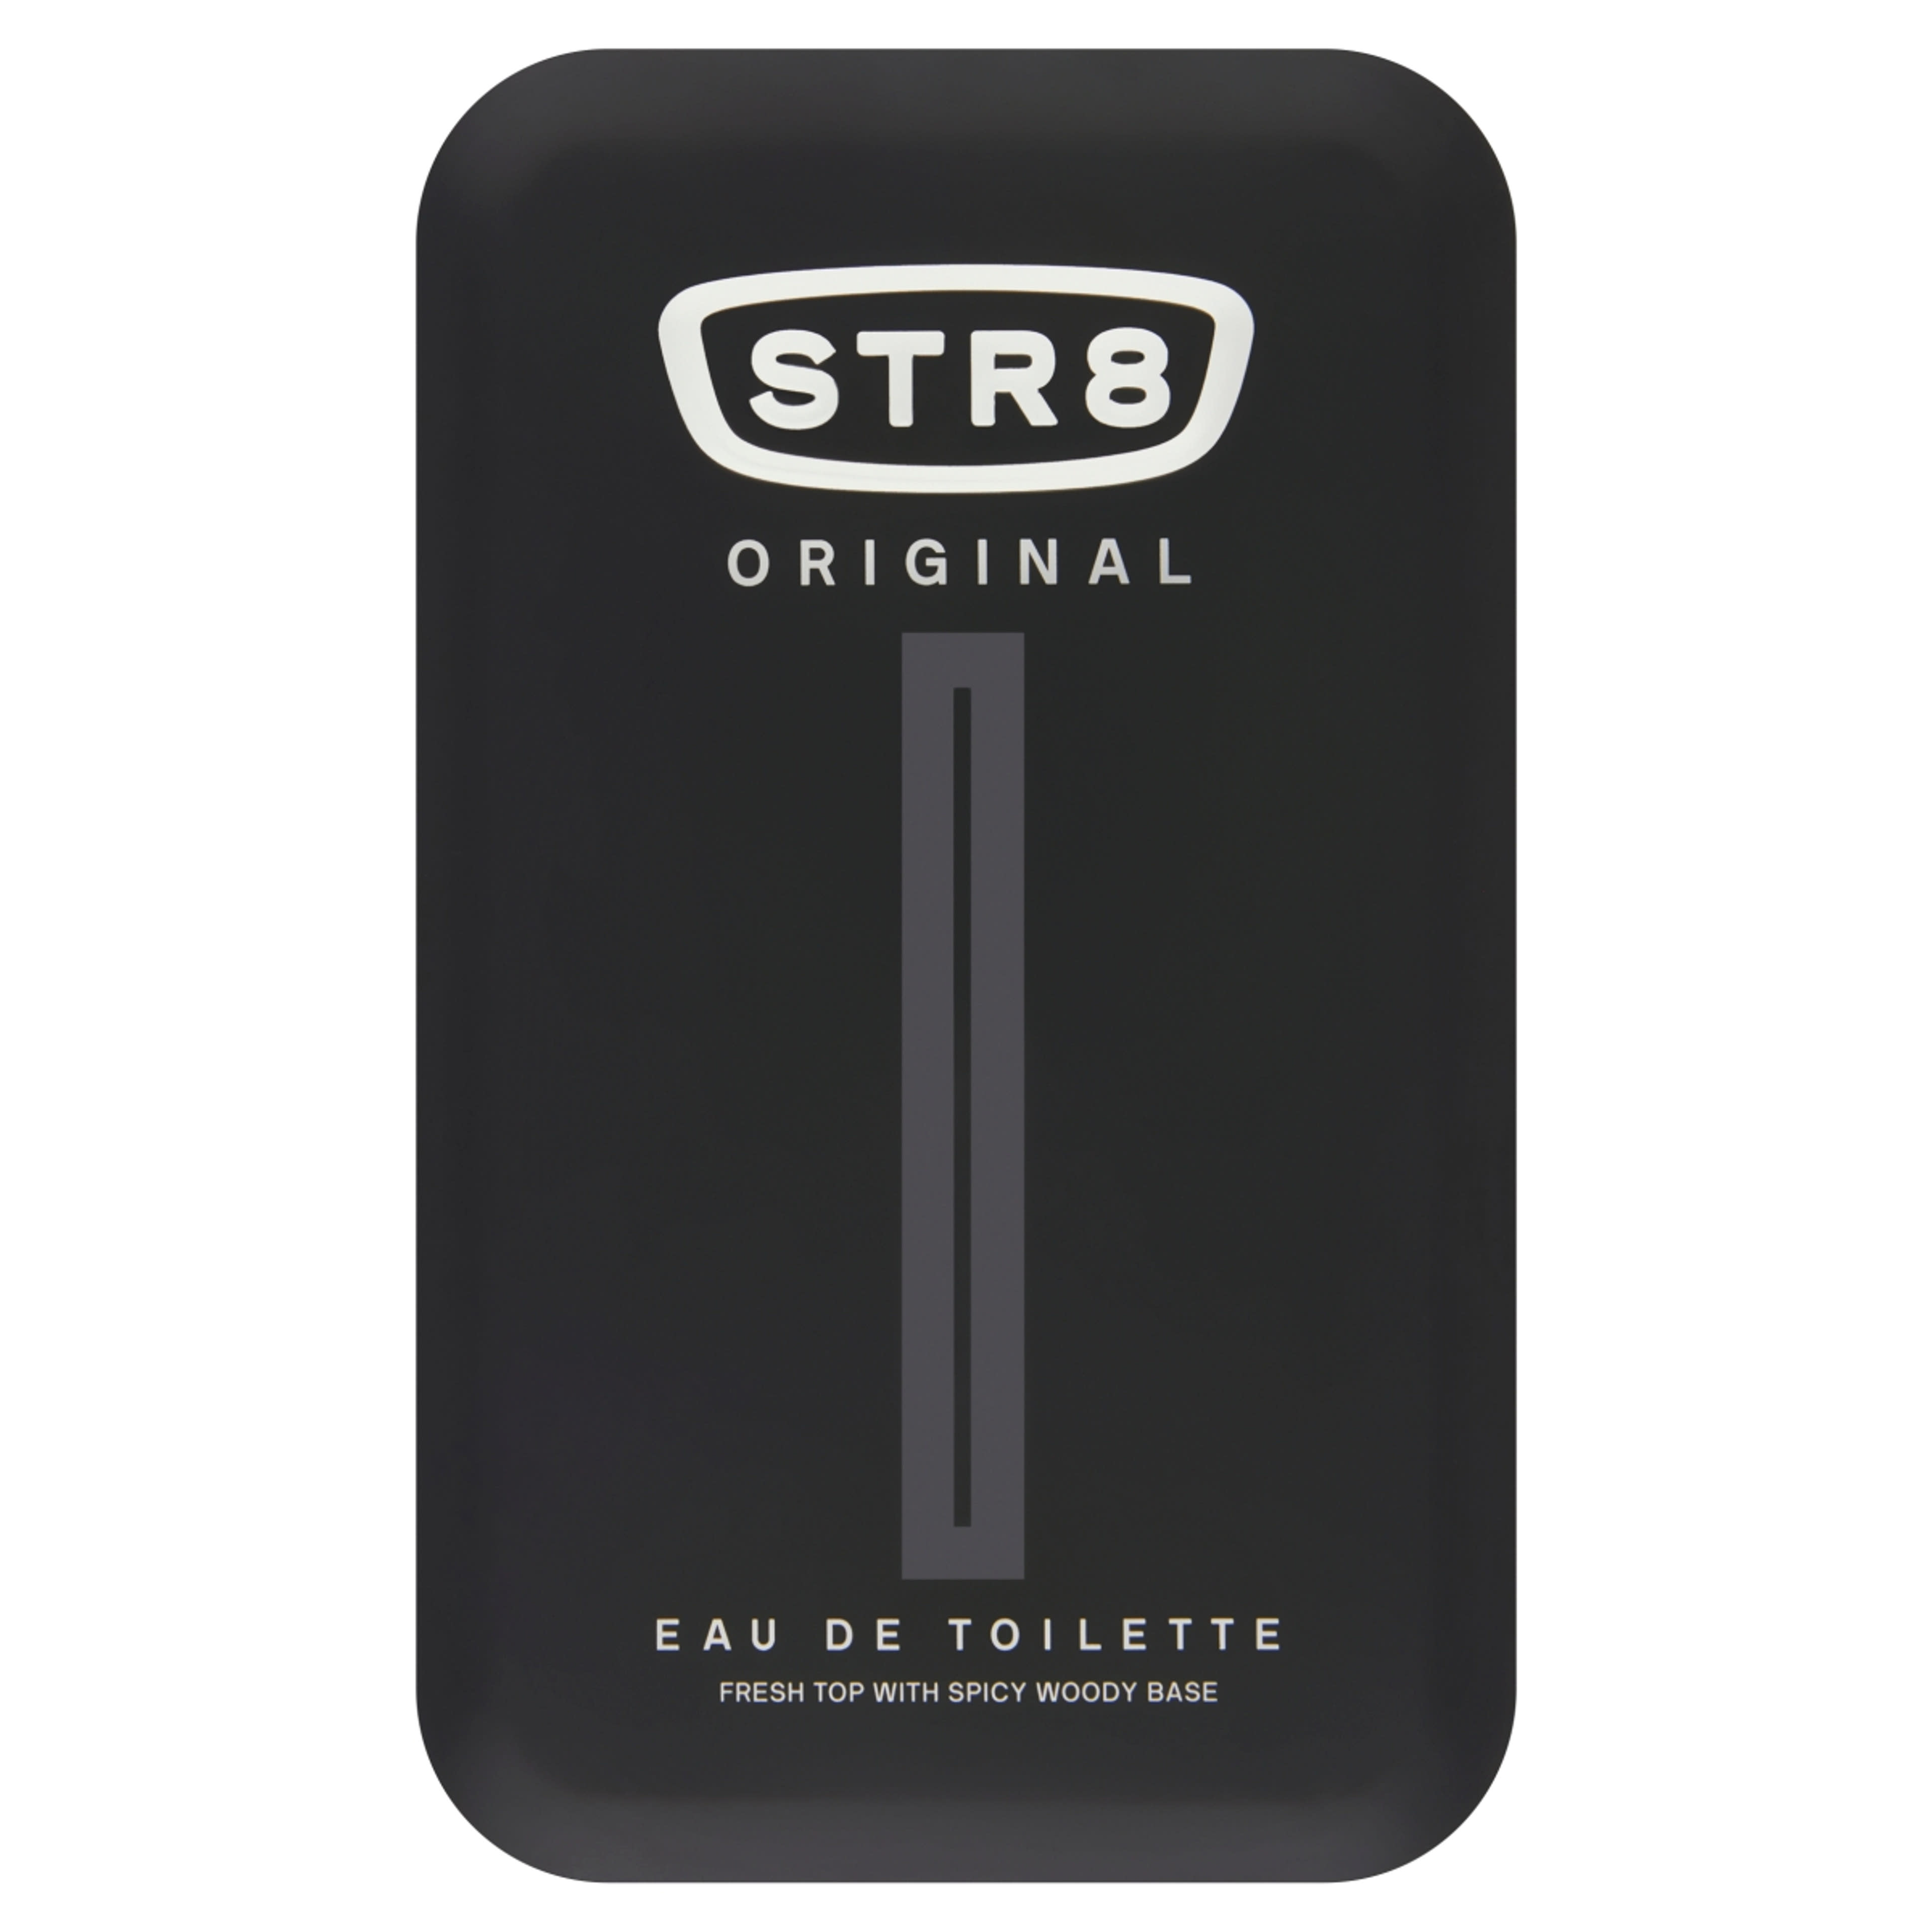 STR8 Original eau de toilette - 100 ml